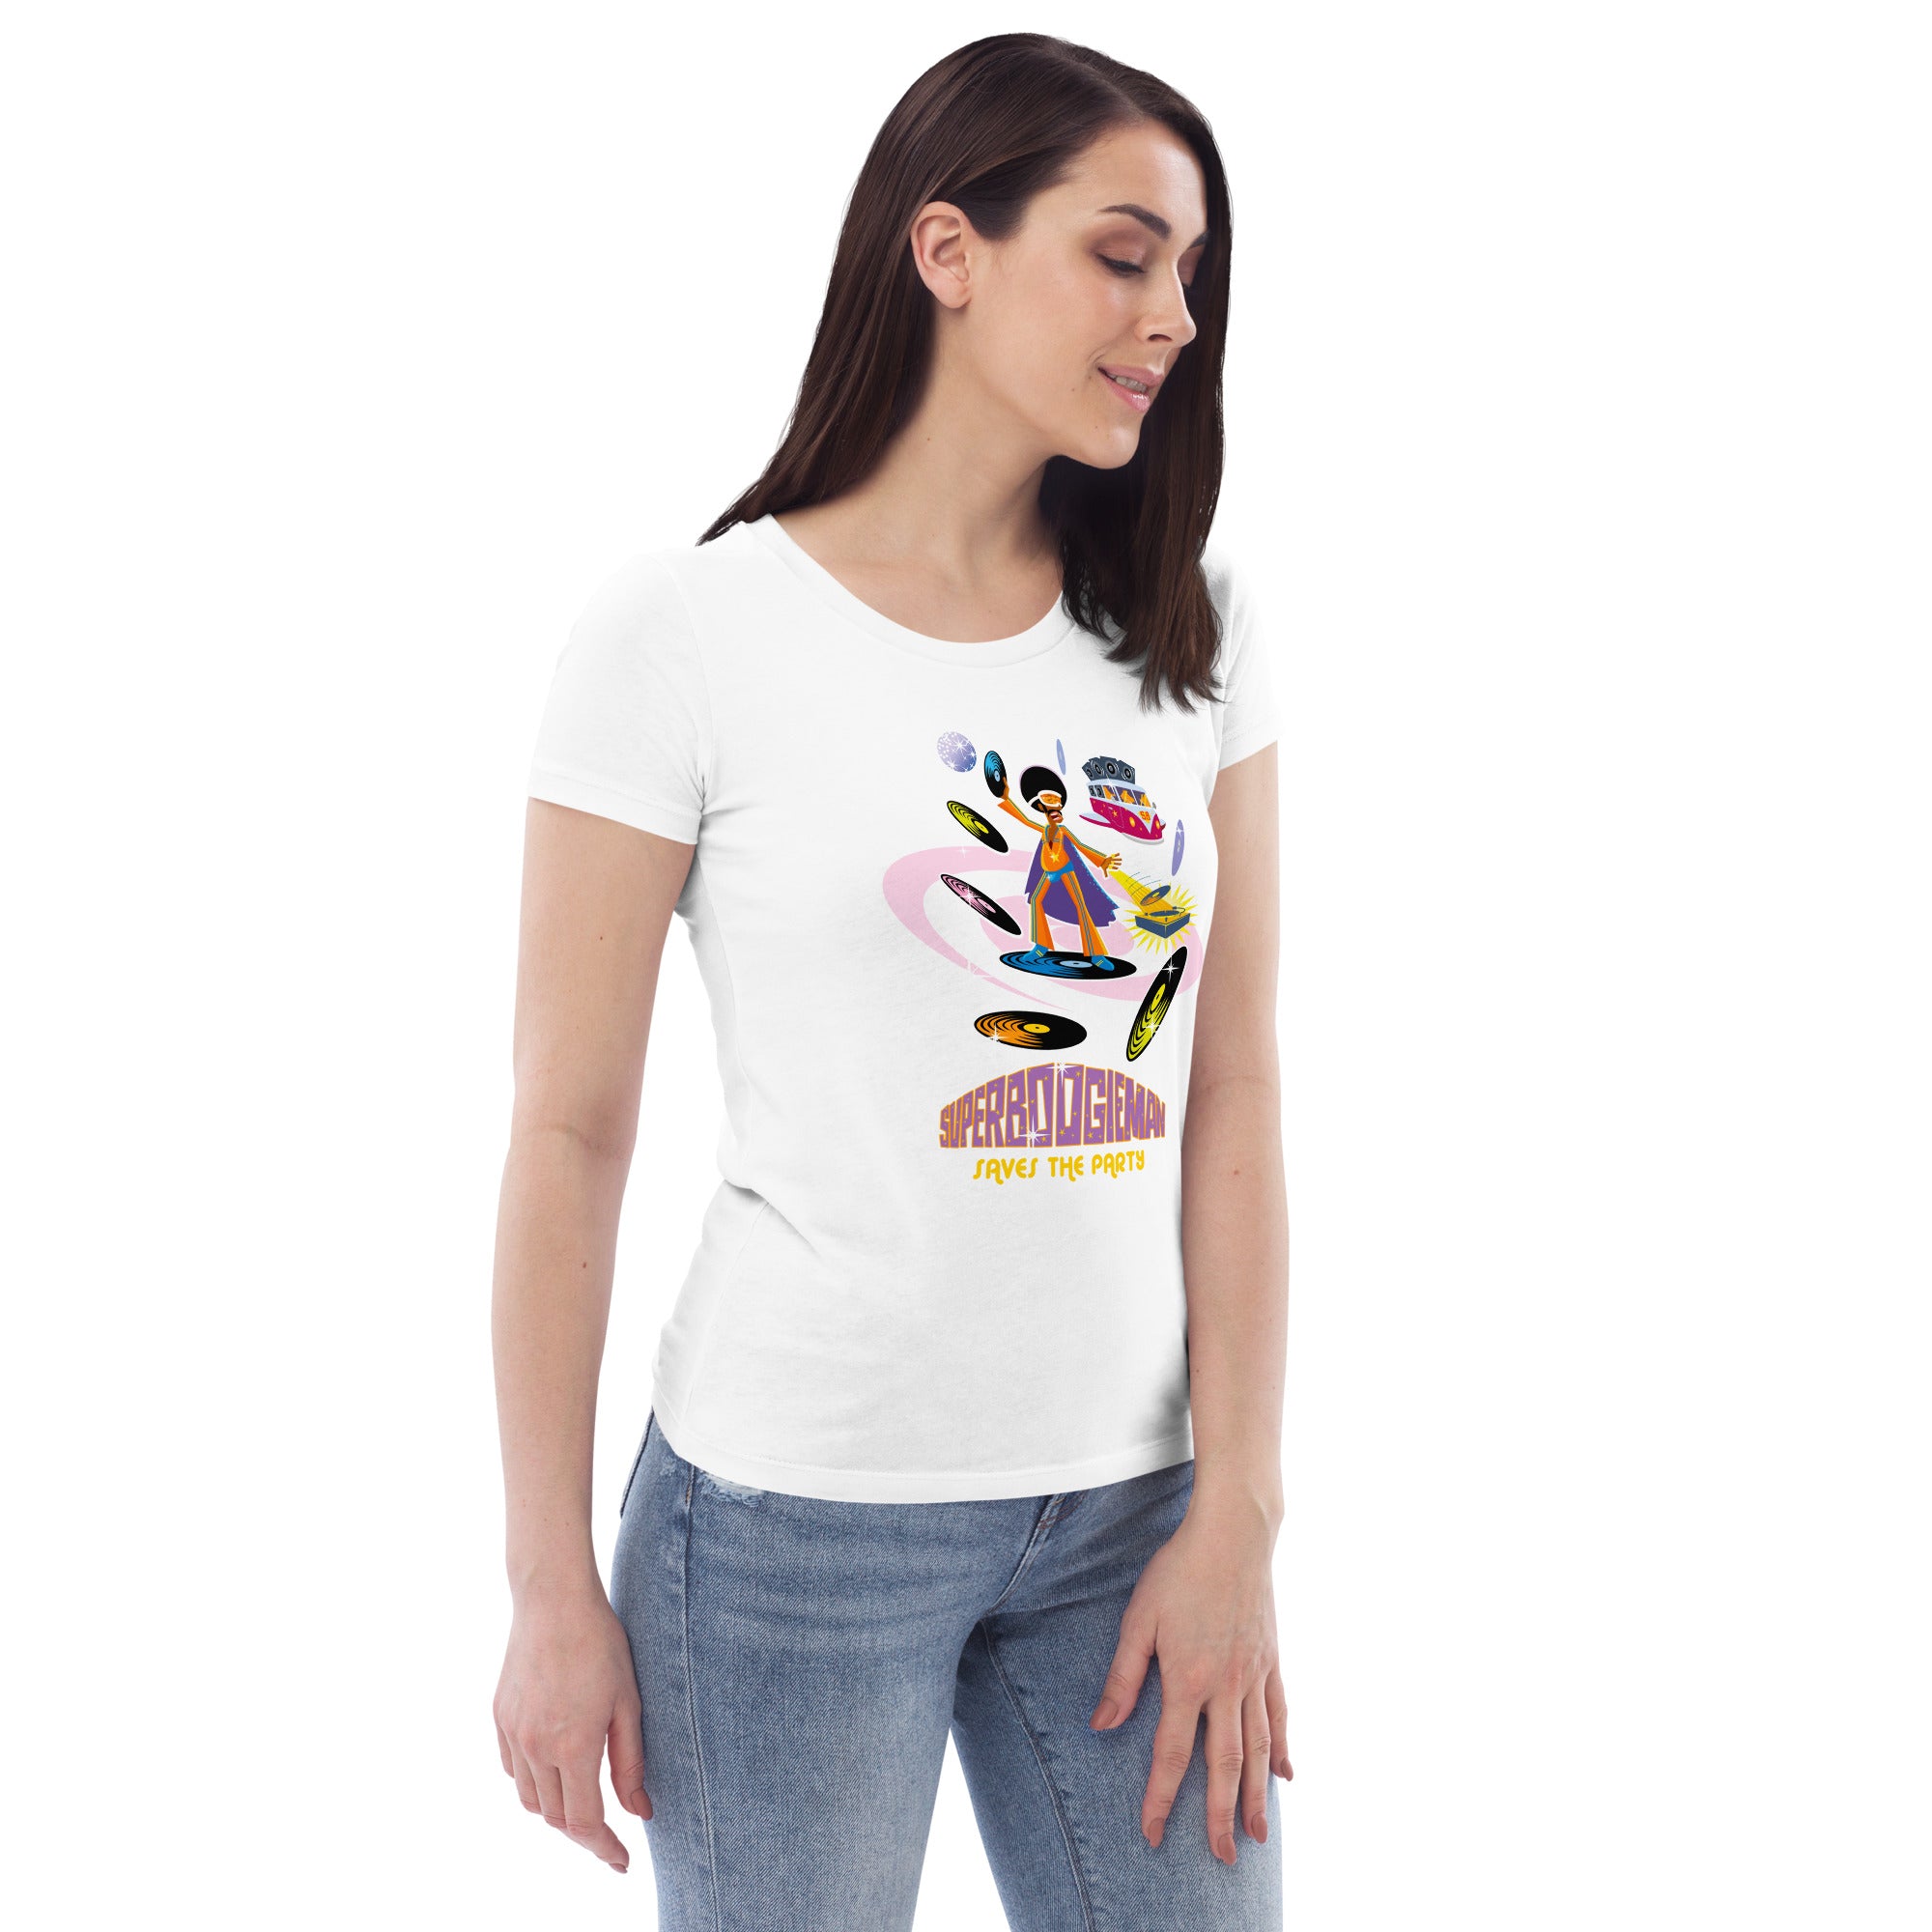 T-shirt moulant écologique femme Superboogieman saves the party